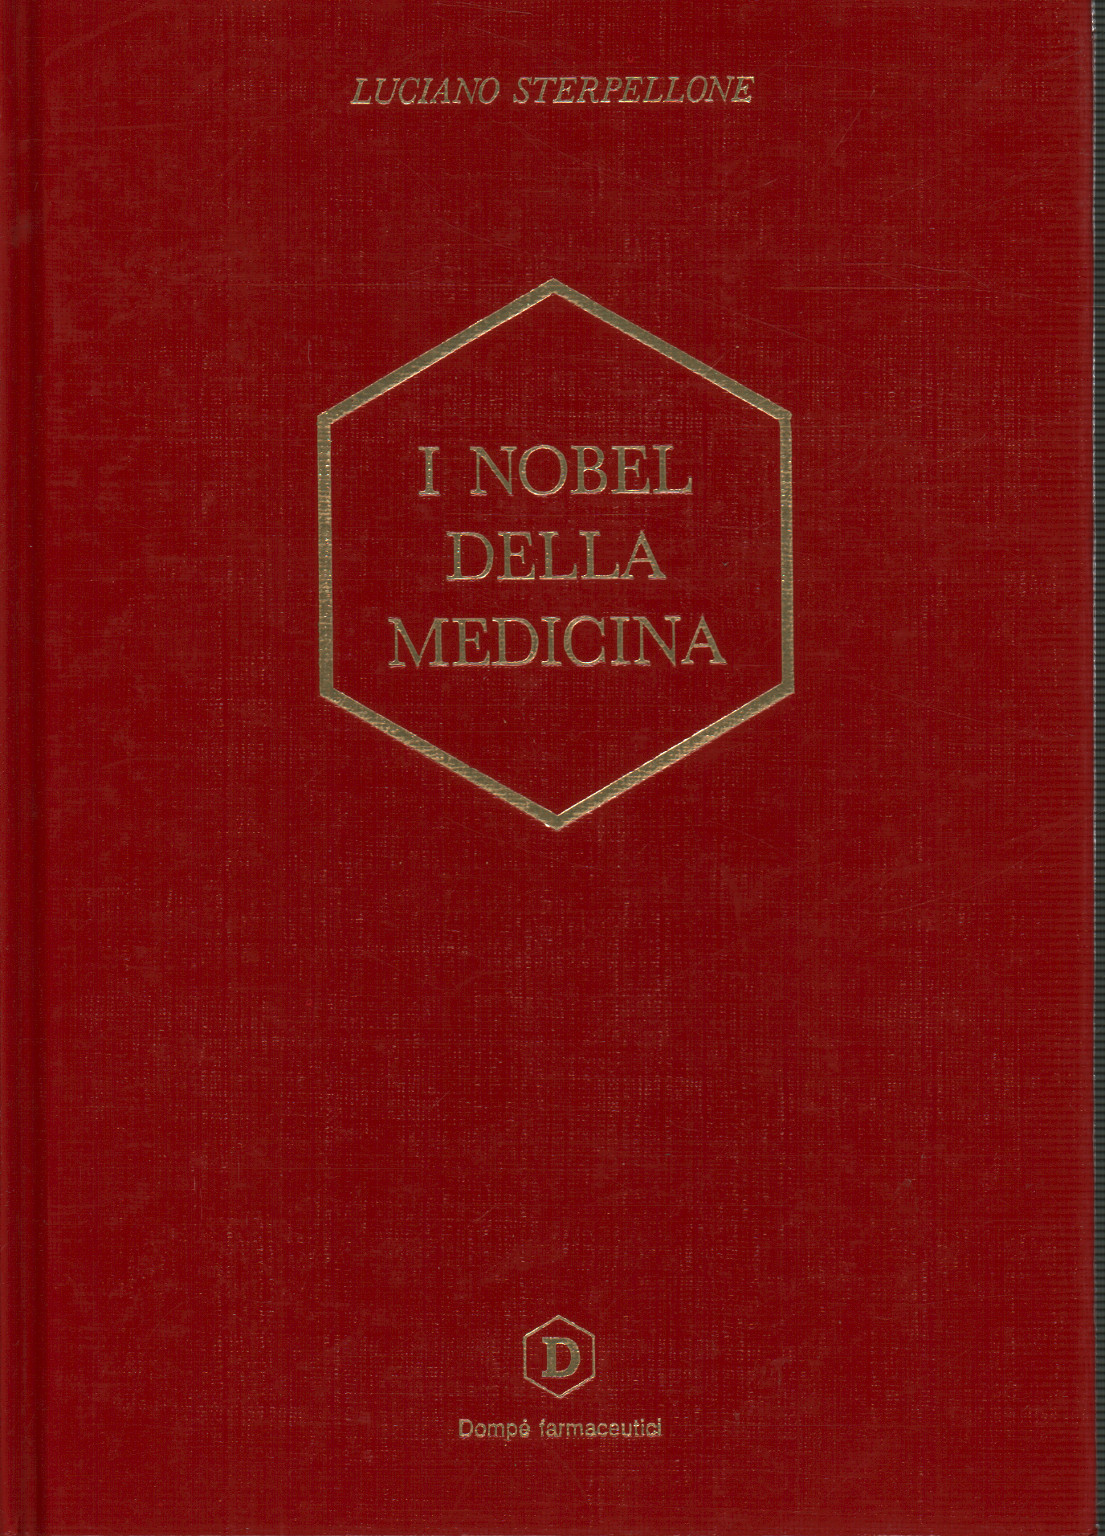 Los premios Nobel de medicina (1901-1990), s.a.